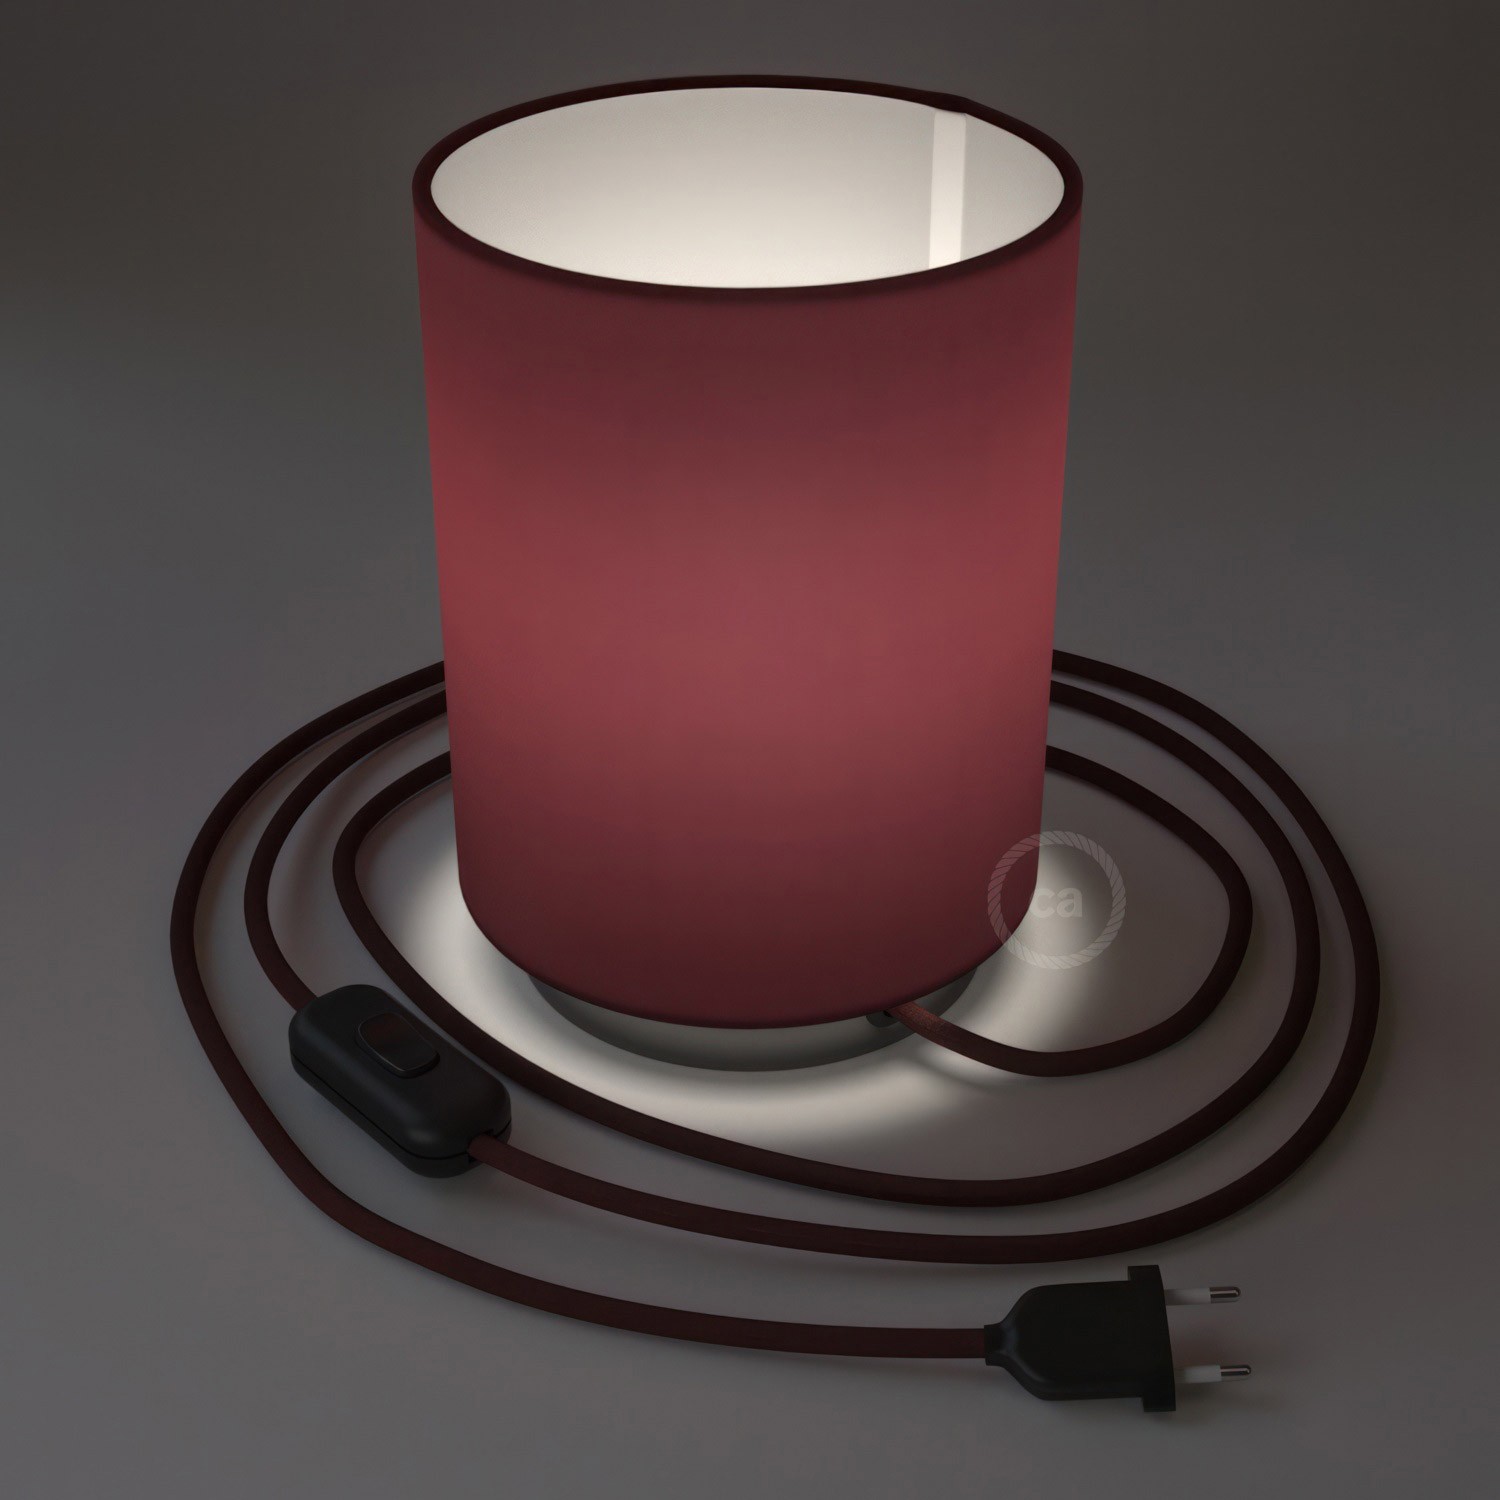 Posaluce Metal met Cilindro lampenkap van bordeaux canvas, inclusief lichtbron, textielkabel, schakelaar en 2-polige stekker